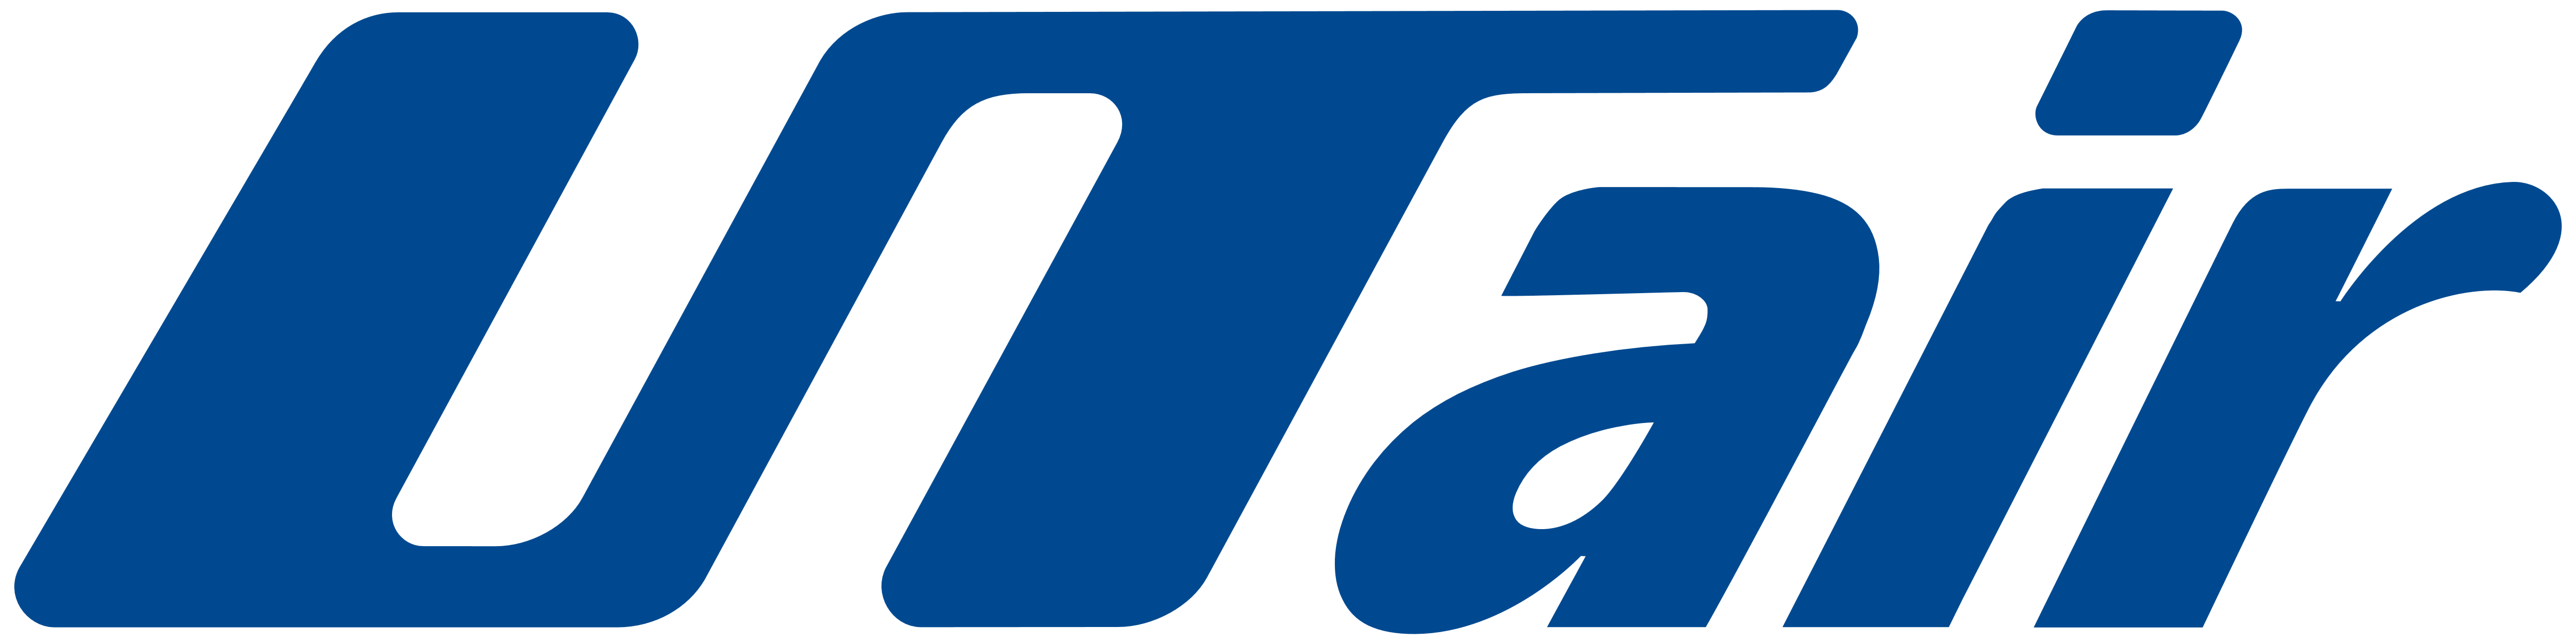 UTair_logo_logotype.png